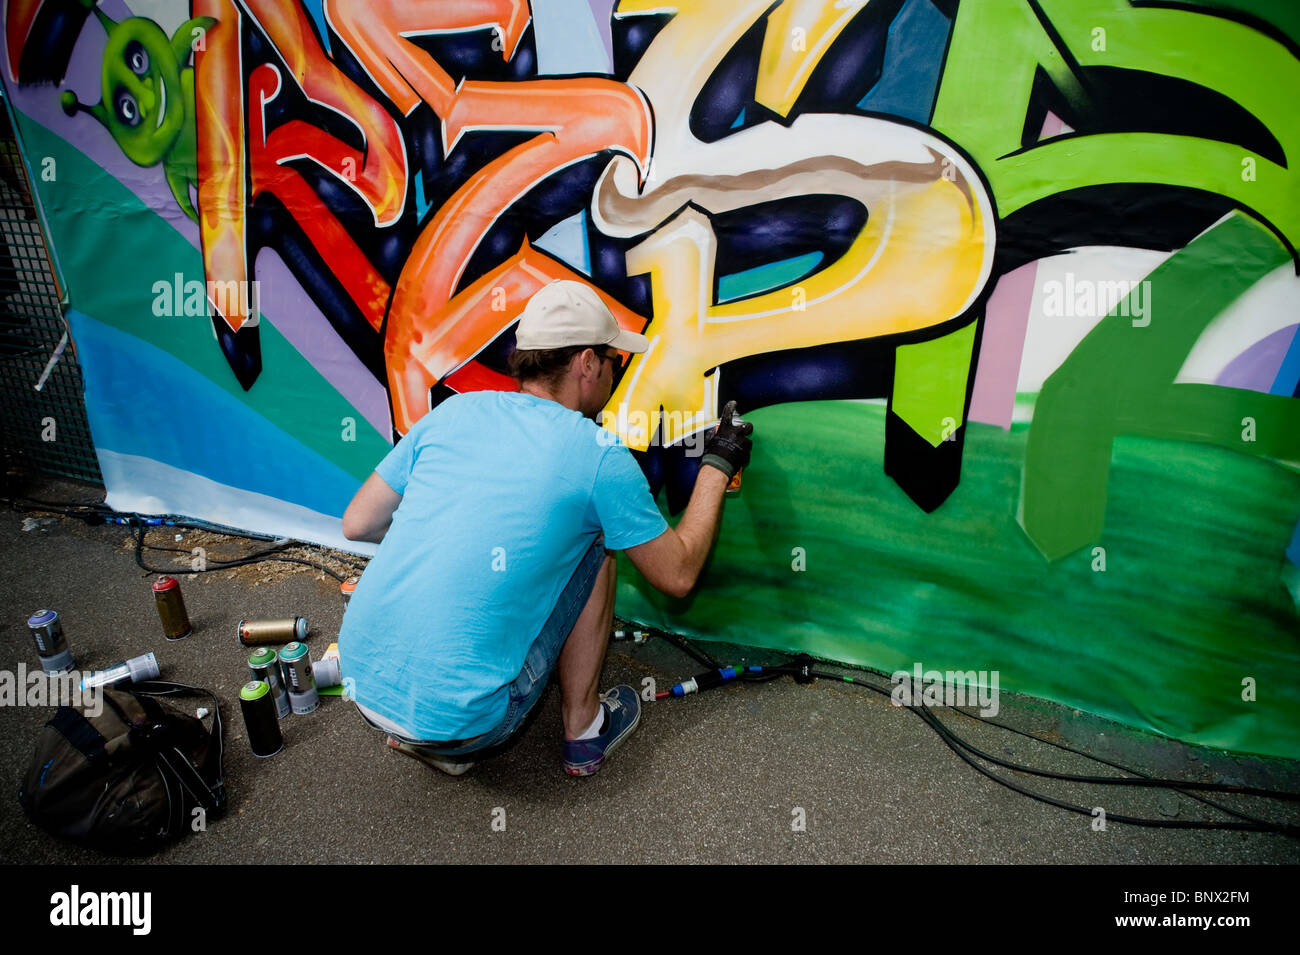 Artisti Di Bombolette Spray Immagini e Fotos Stock - Alamy